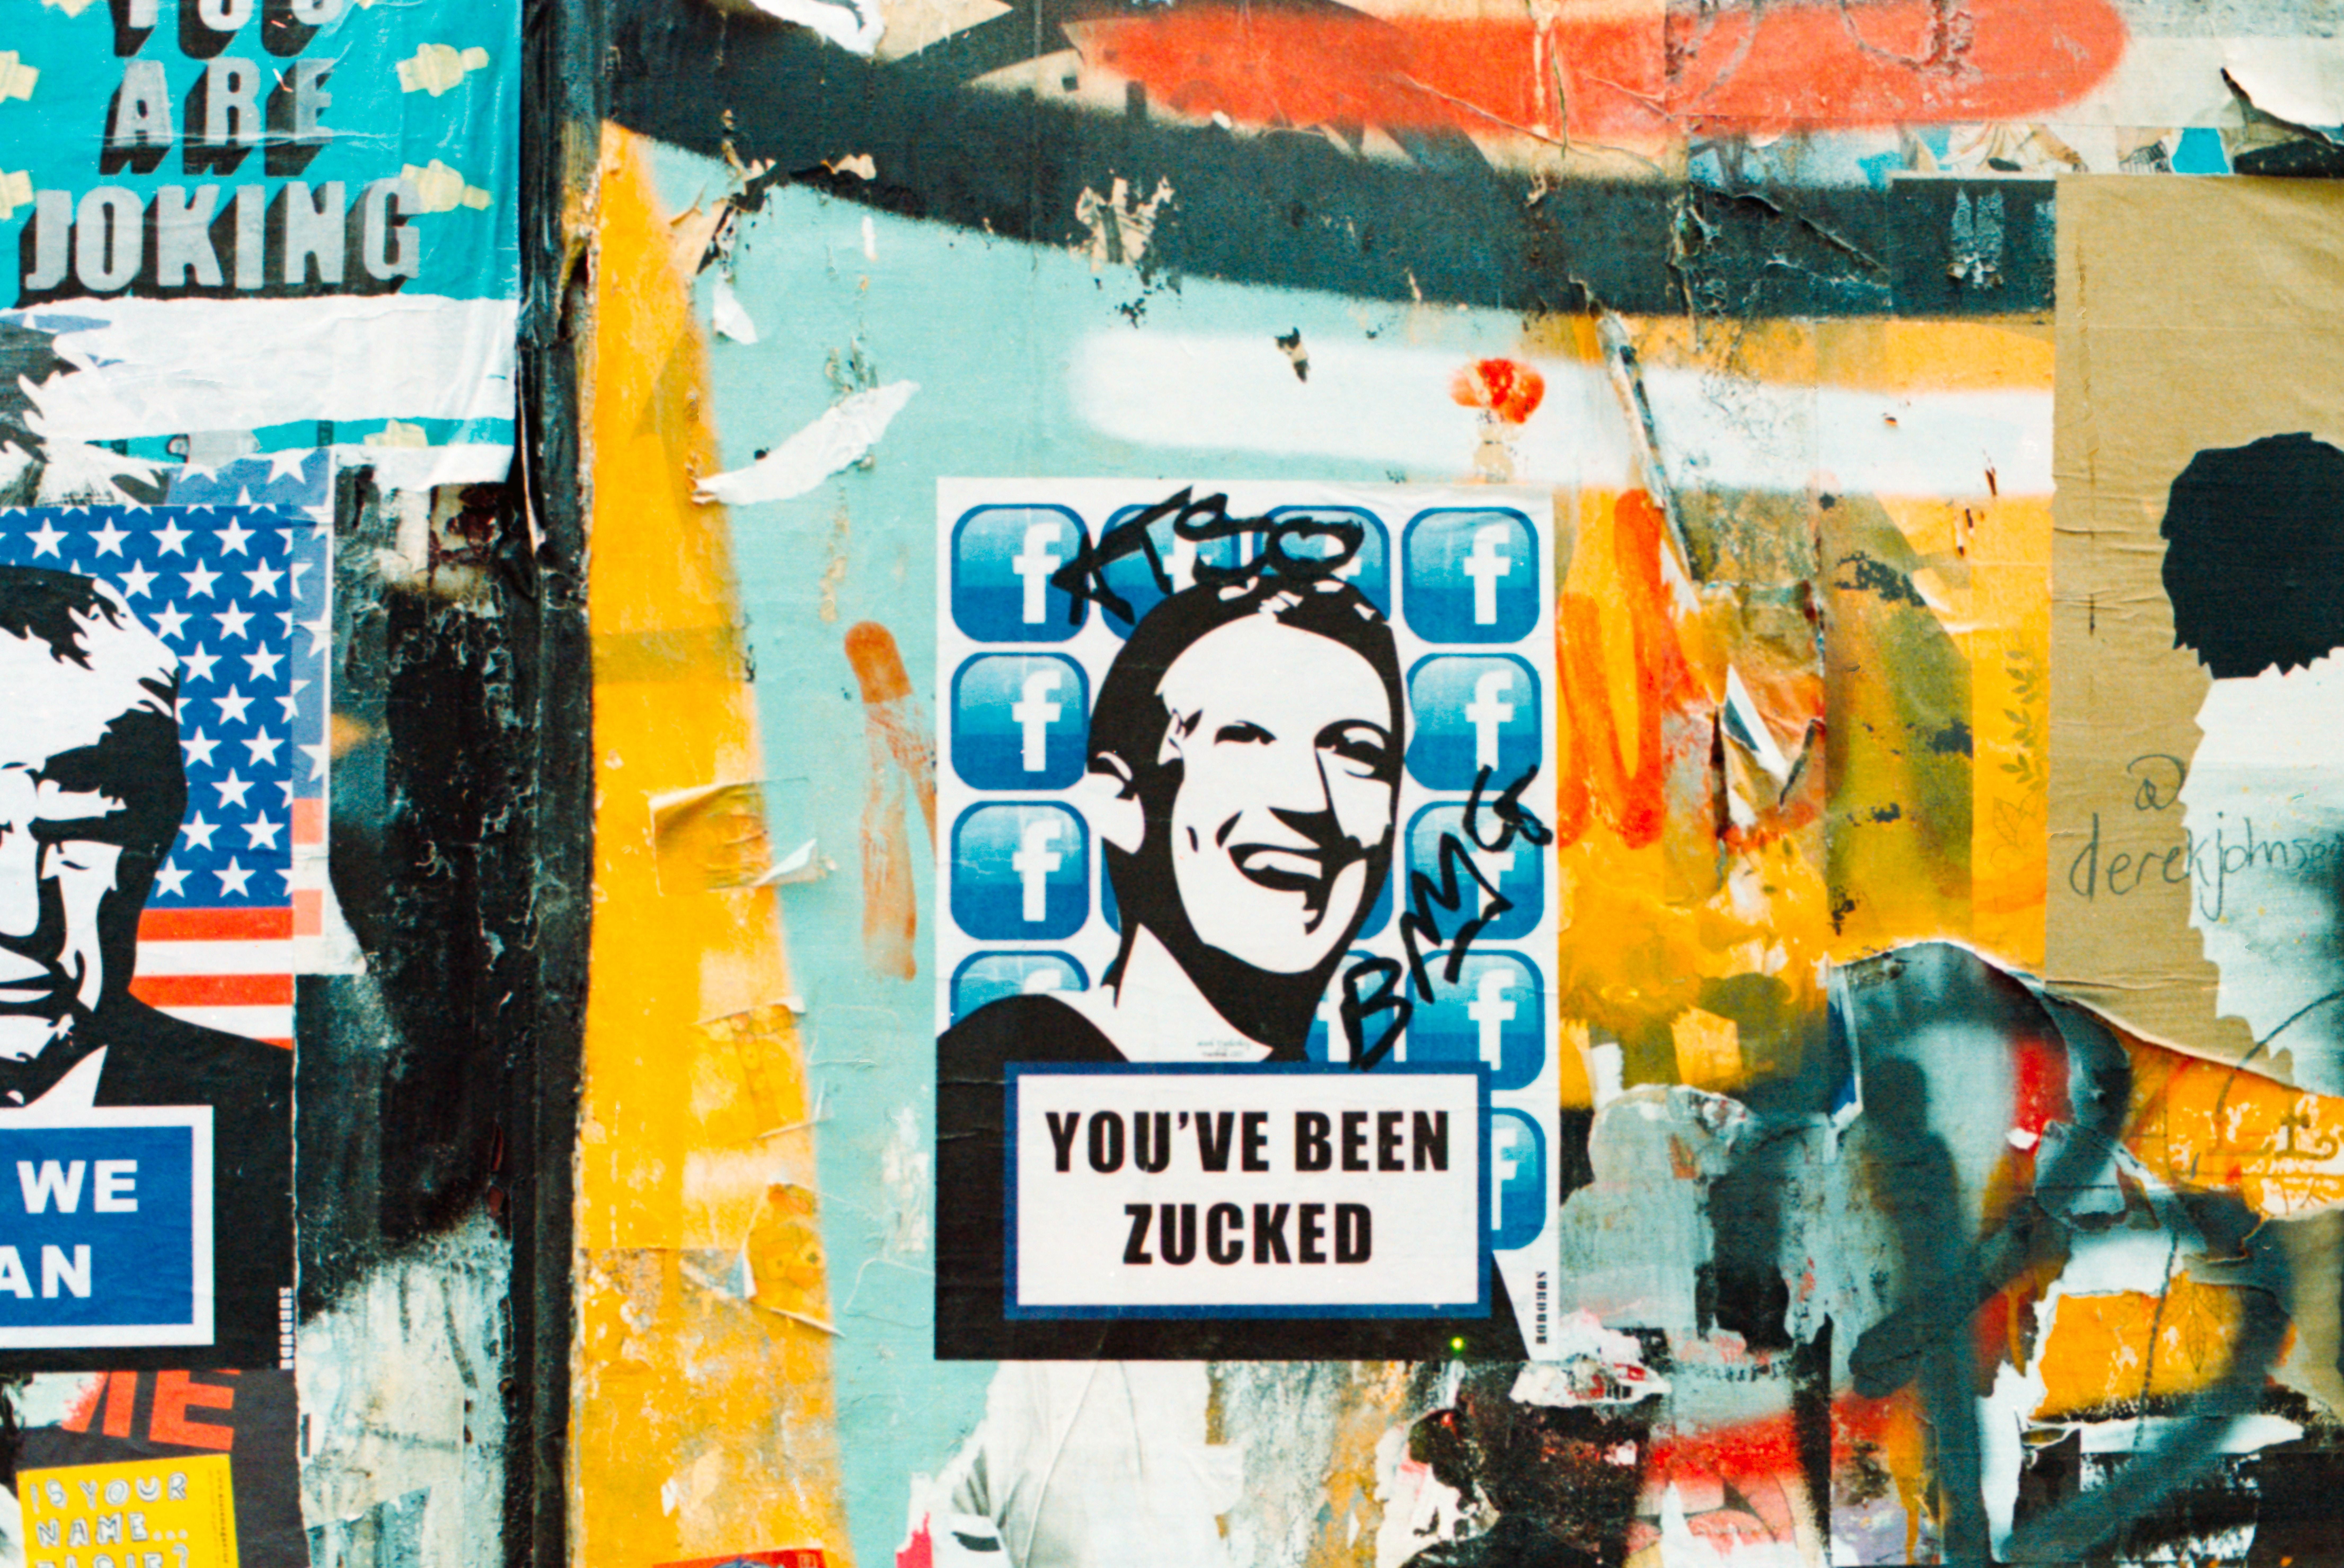 Mark Zuckerberg, a Facebook alapítójának képe egy falra festve